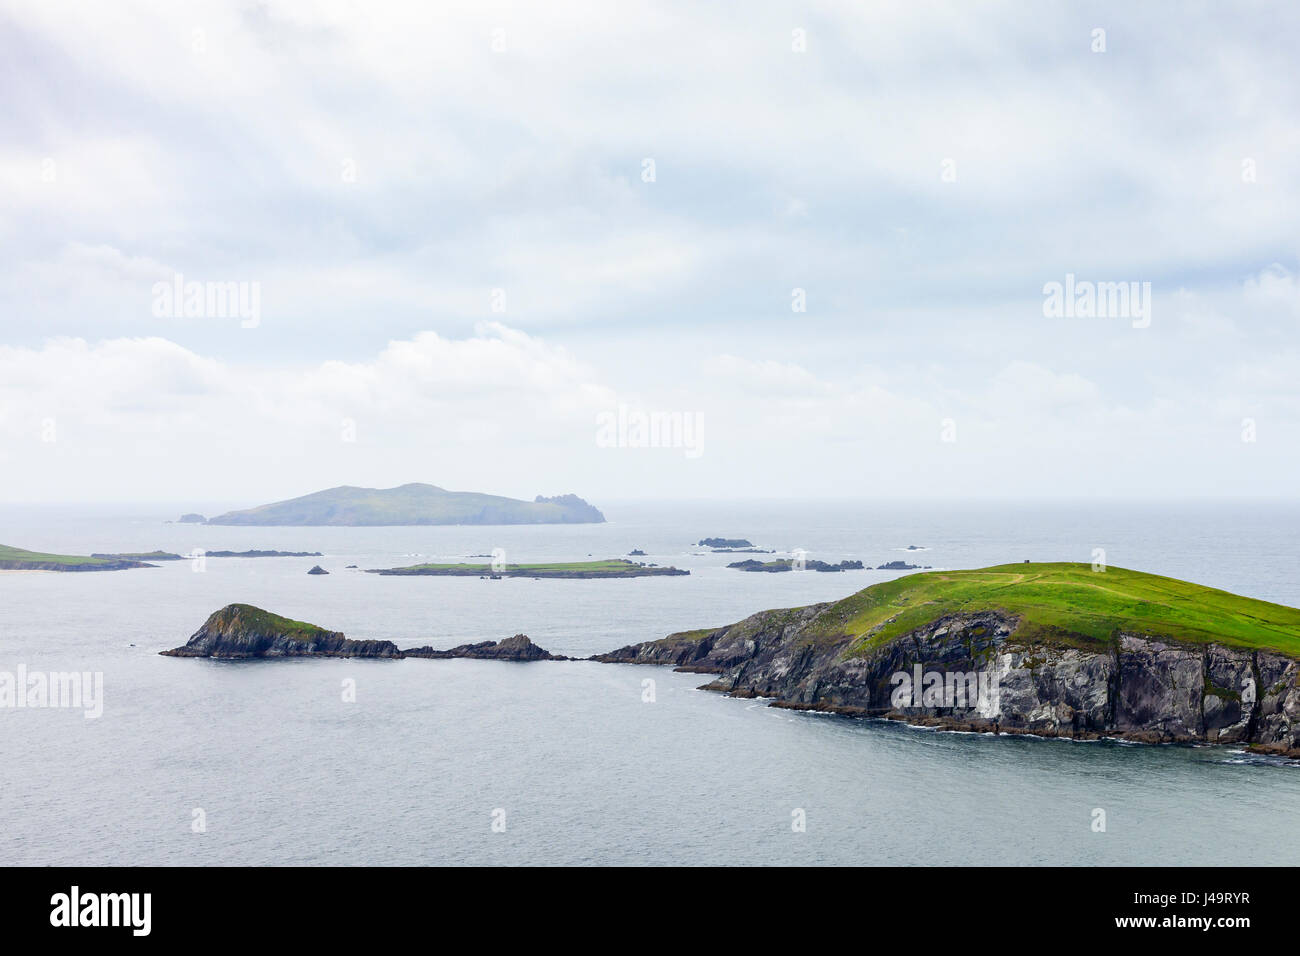 Péninsule de Dingle, comté de Kerry, Irlande - Inishtooskert, alias l'homme mort ou le Géant endormi , est la plus septentrionale des îles Blasket. Banque D'Images